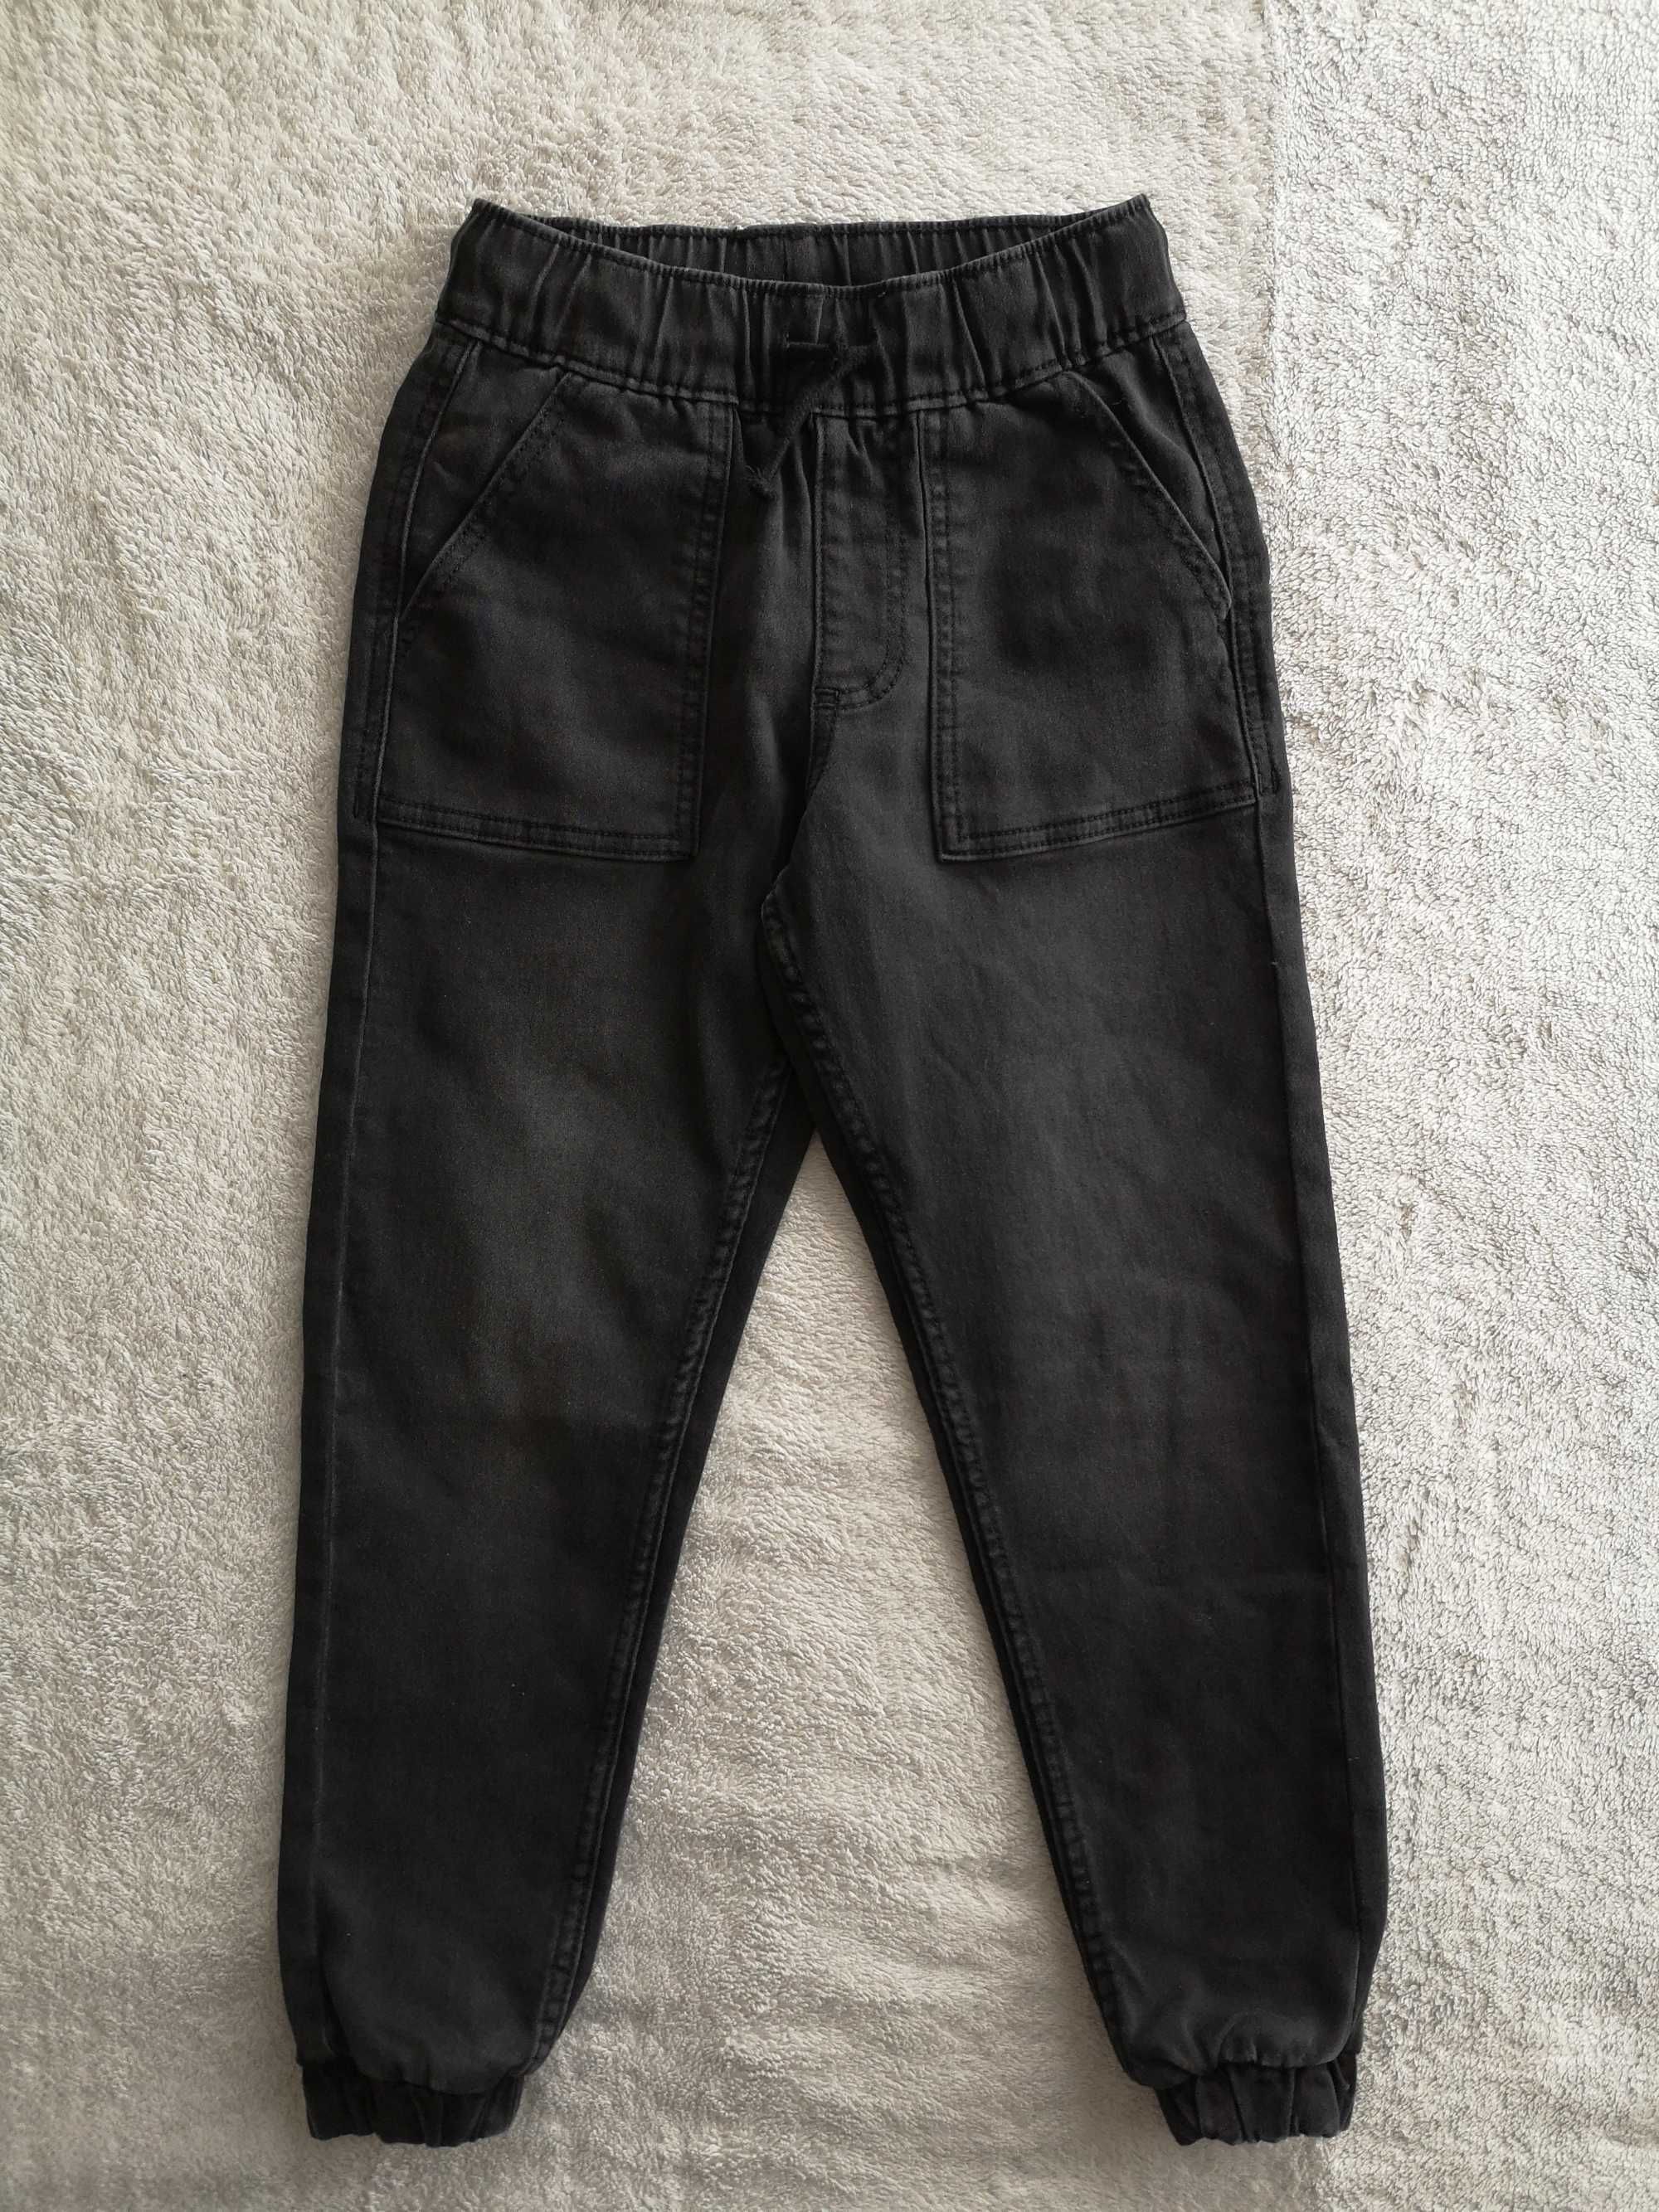 Szare spodnie jeansowe jeansy joggery George 116 - 122 jak nowe